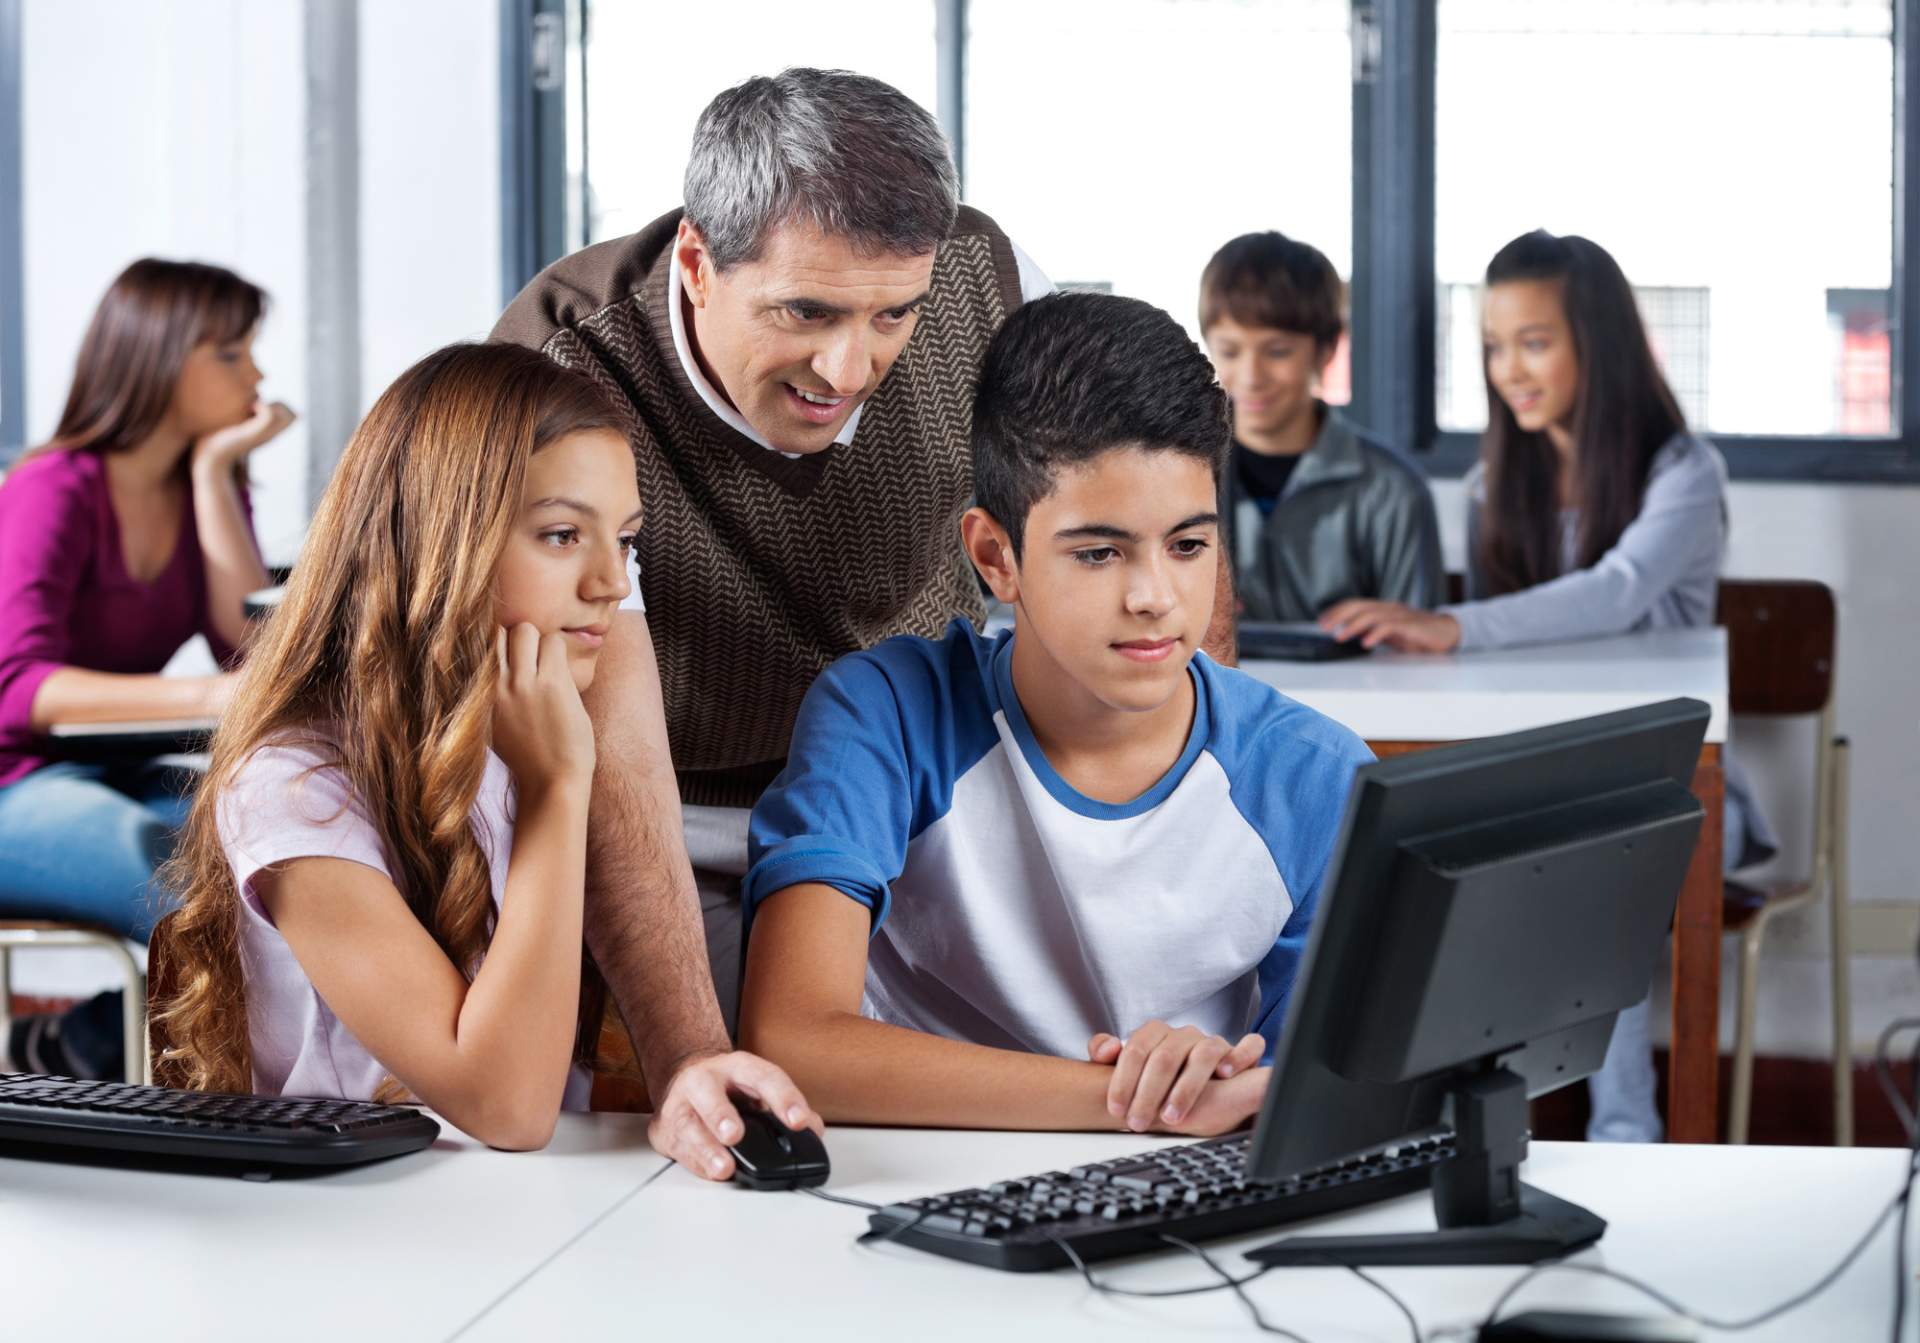 Teacher standing over kids in front of computer screen